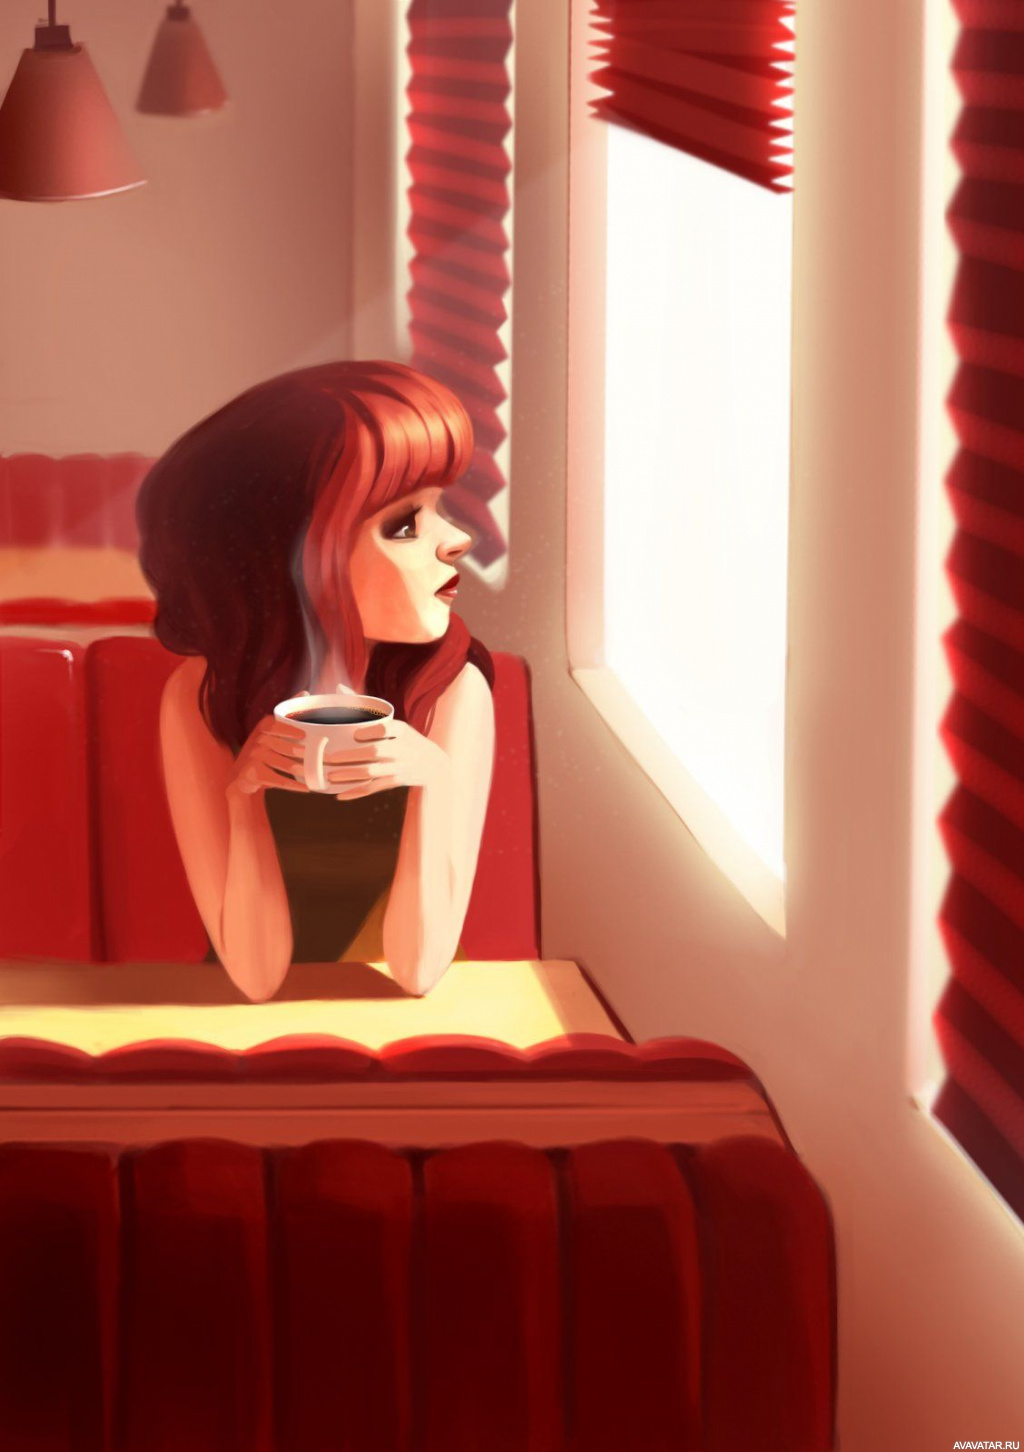 Нарисованная девушка в кафе